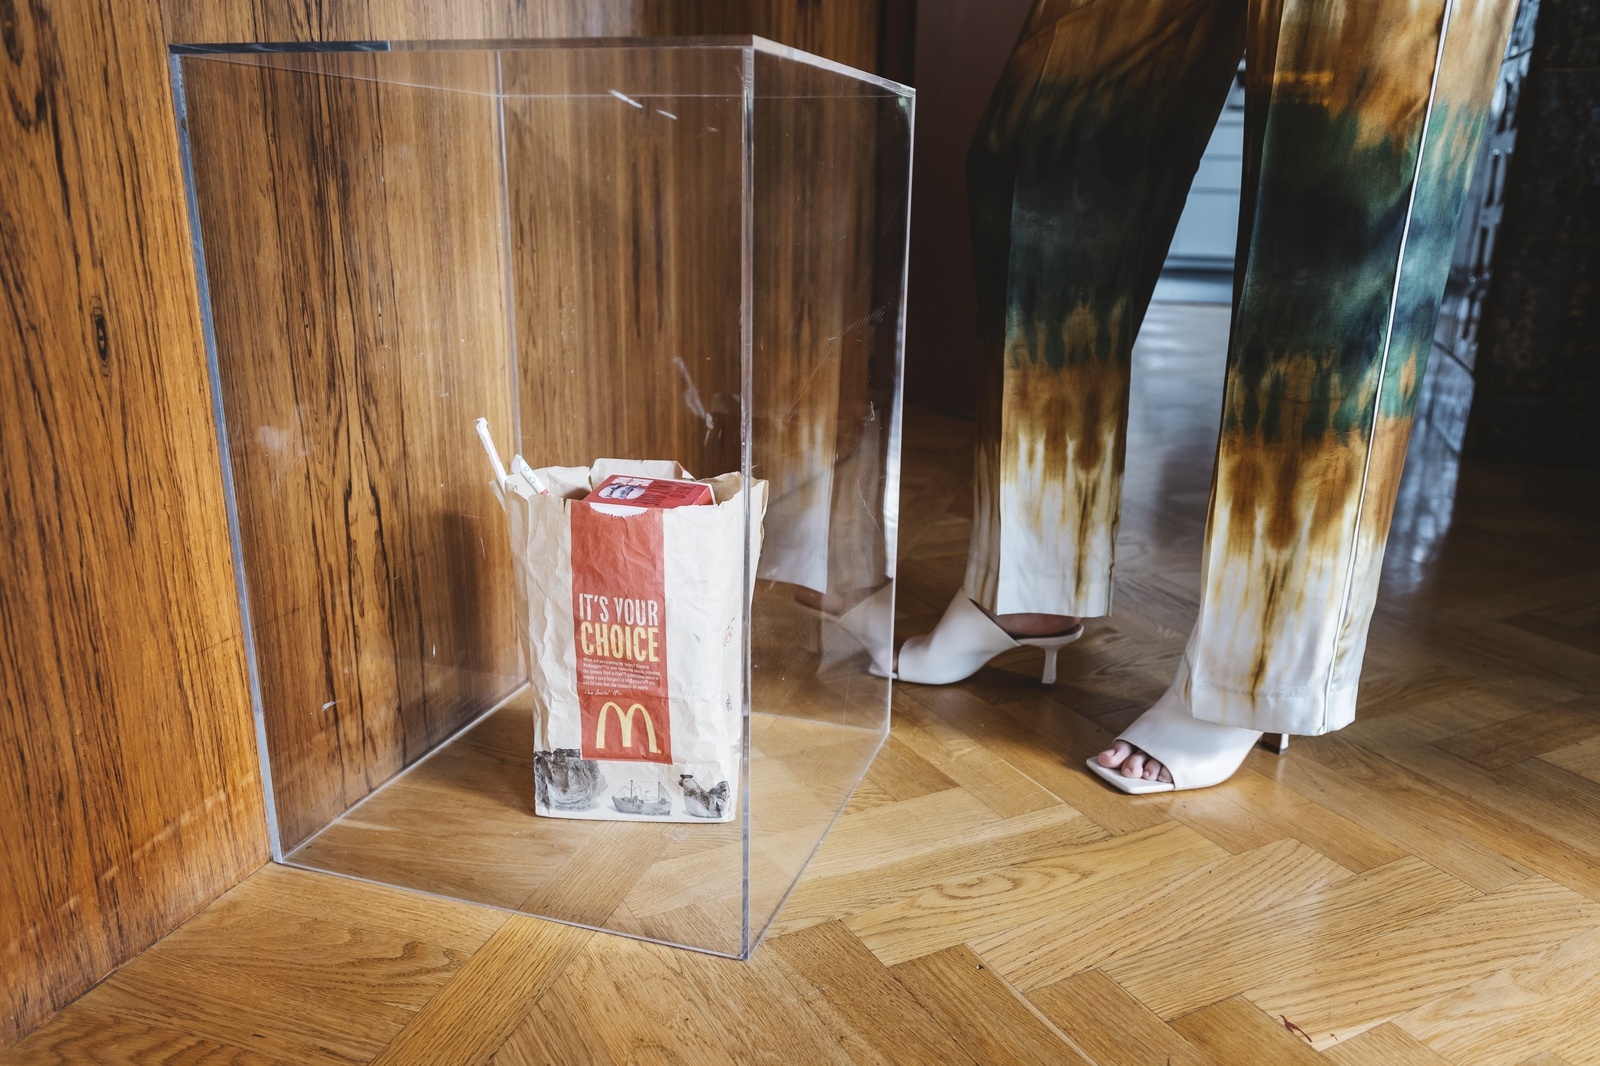 Malin och hennes man är konstintresserade. Det här verket av Peter Geschwind heter "Moving trash" och består av en McDonald's-påse med pappersförpackningar – samt en ljudaktiverad batteridriven leksak som gör att verket rör sig vid höga ljud.